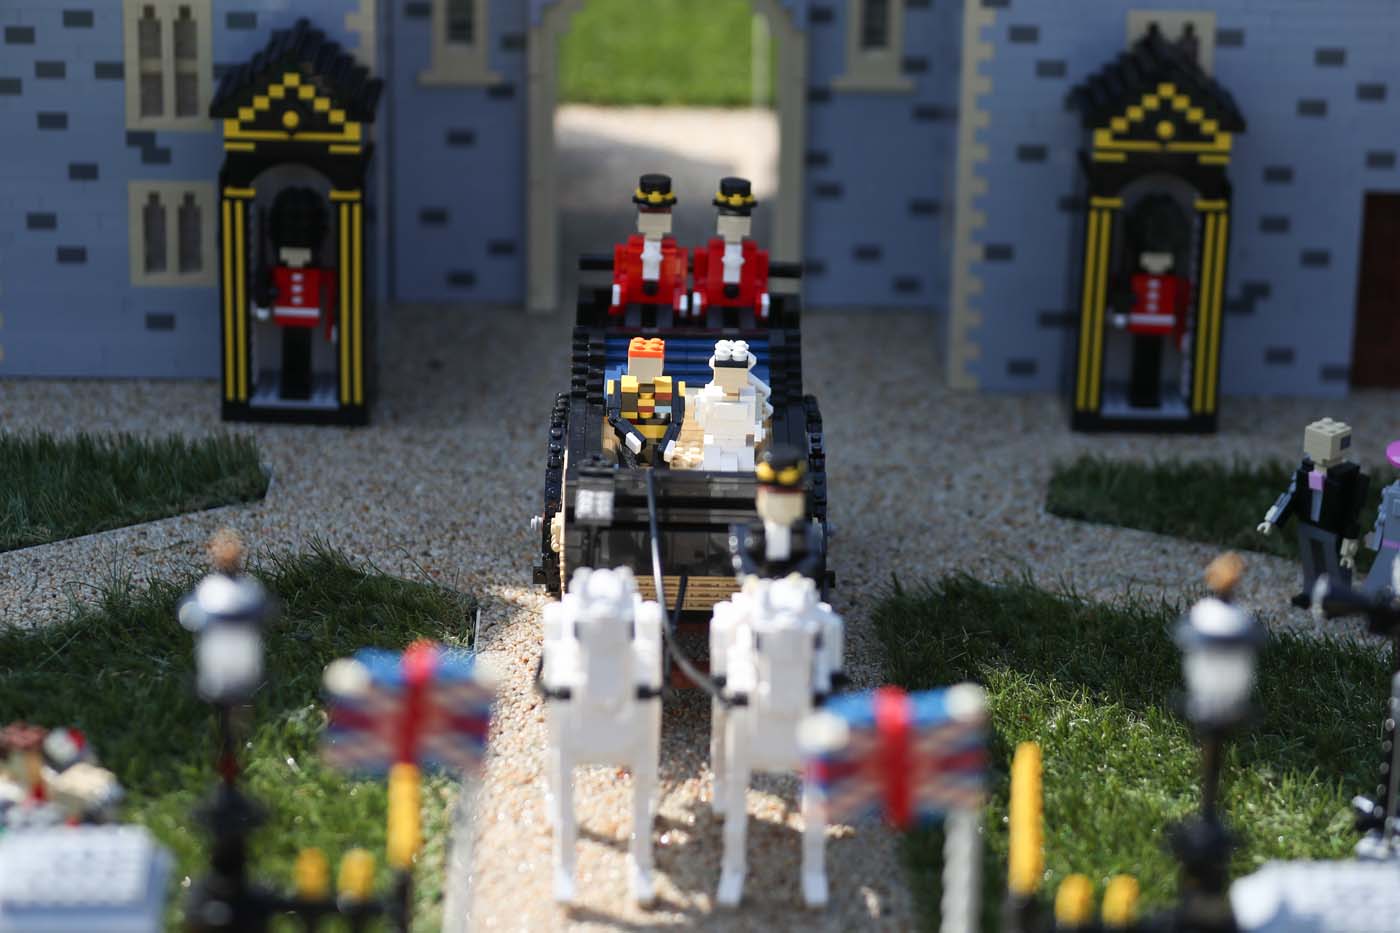 La boda real del príncipe Harry y Meghan fabricada con 60 mil piezas de Lego (Fotos+video)